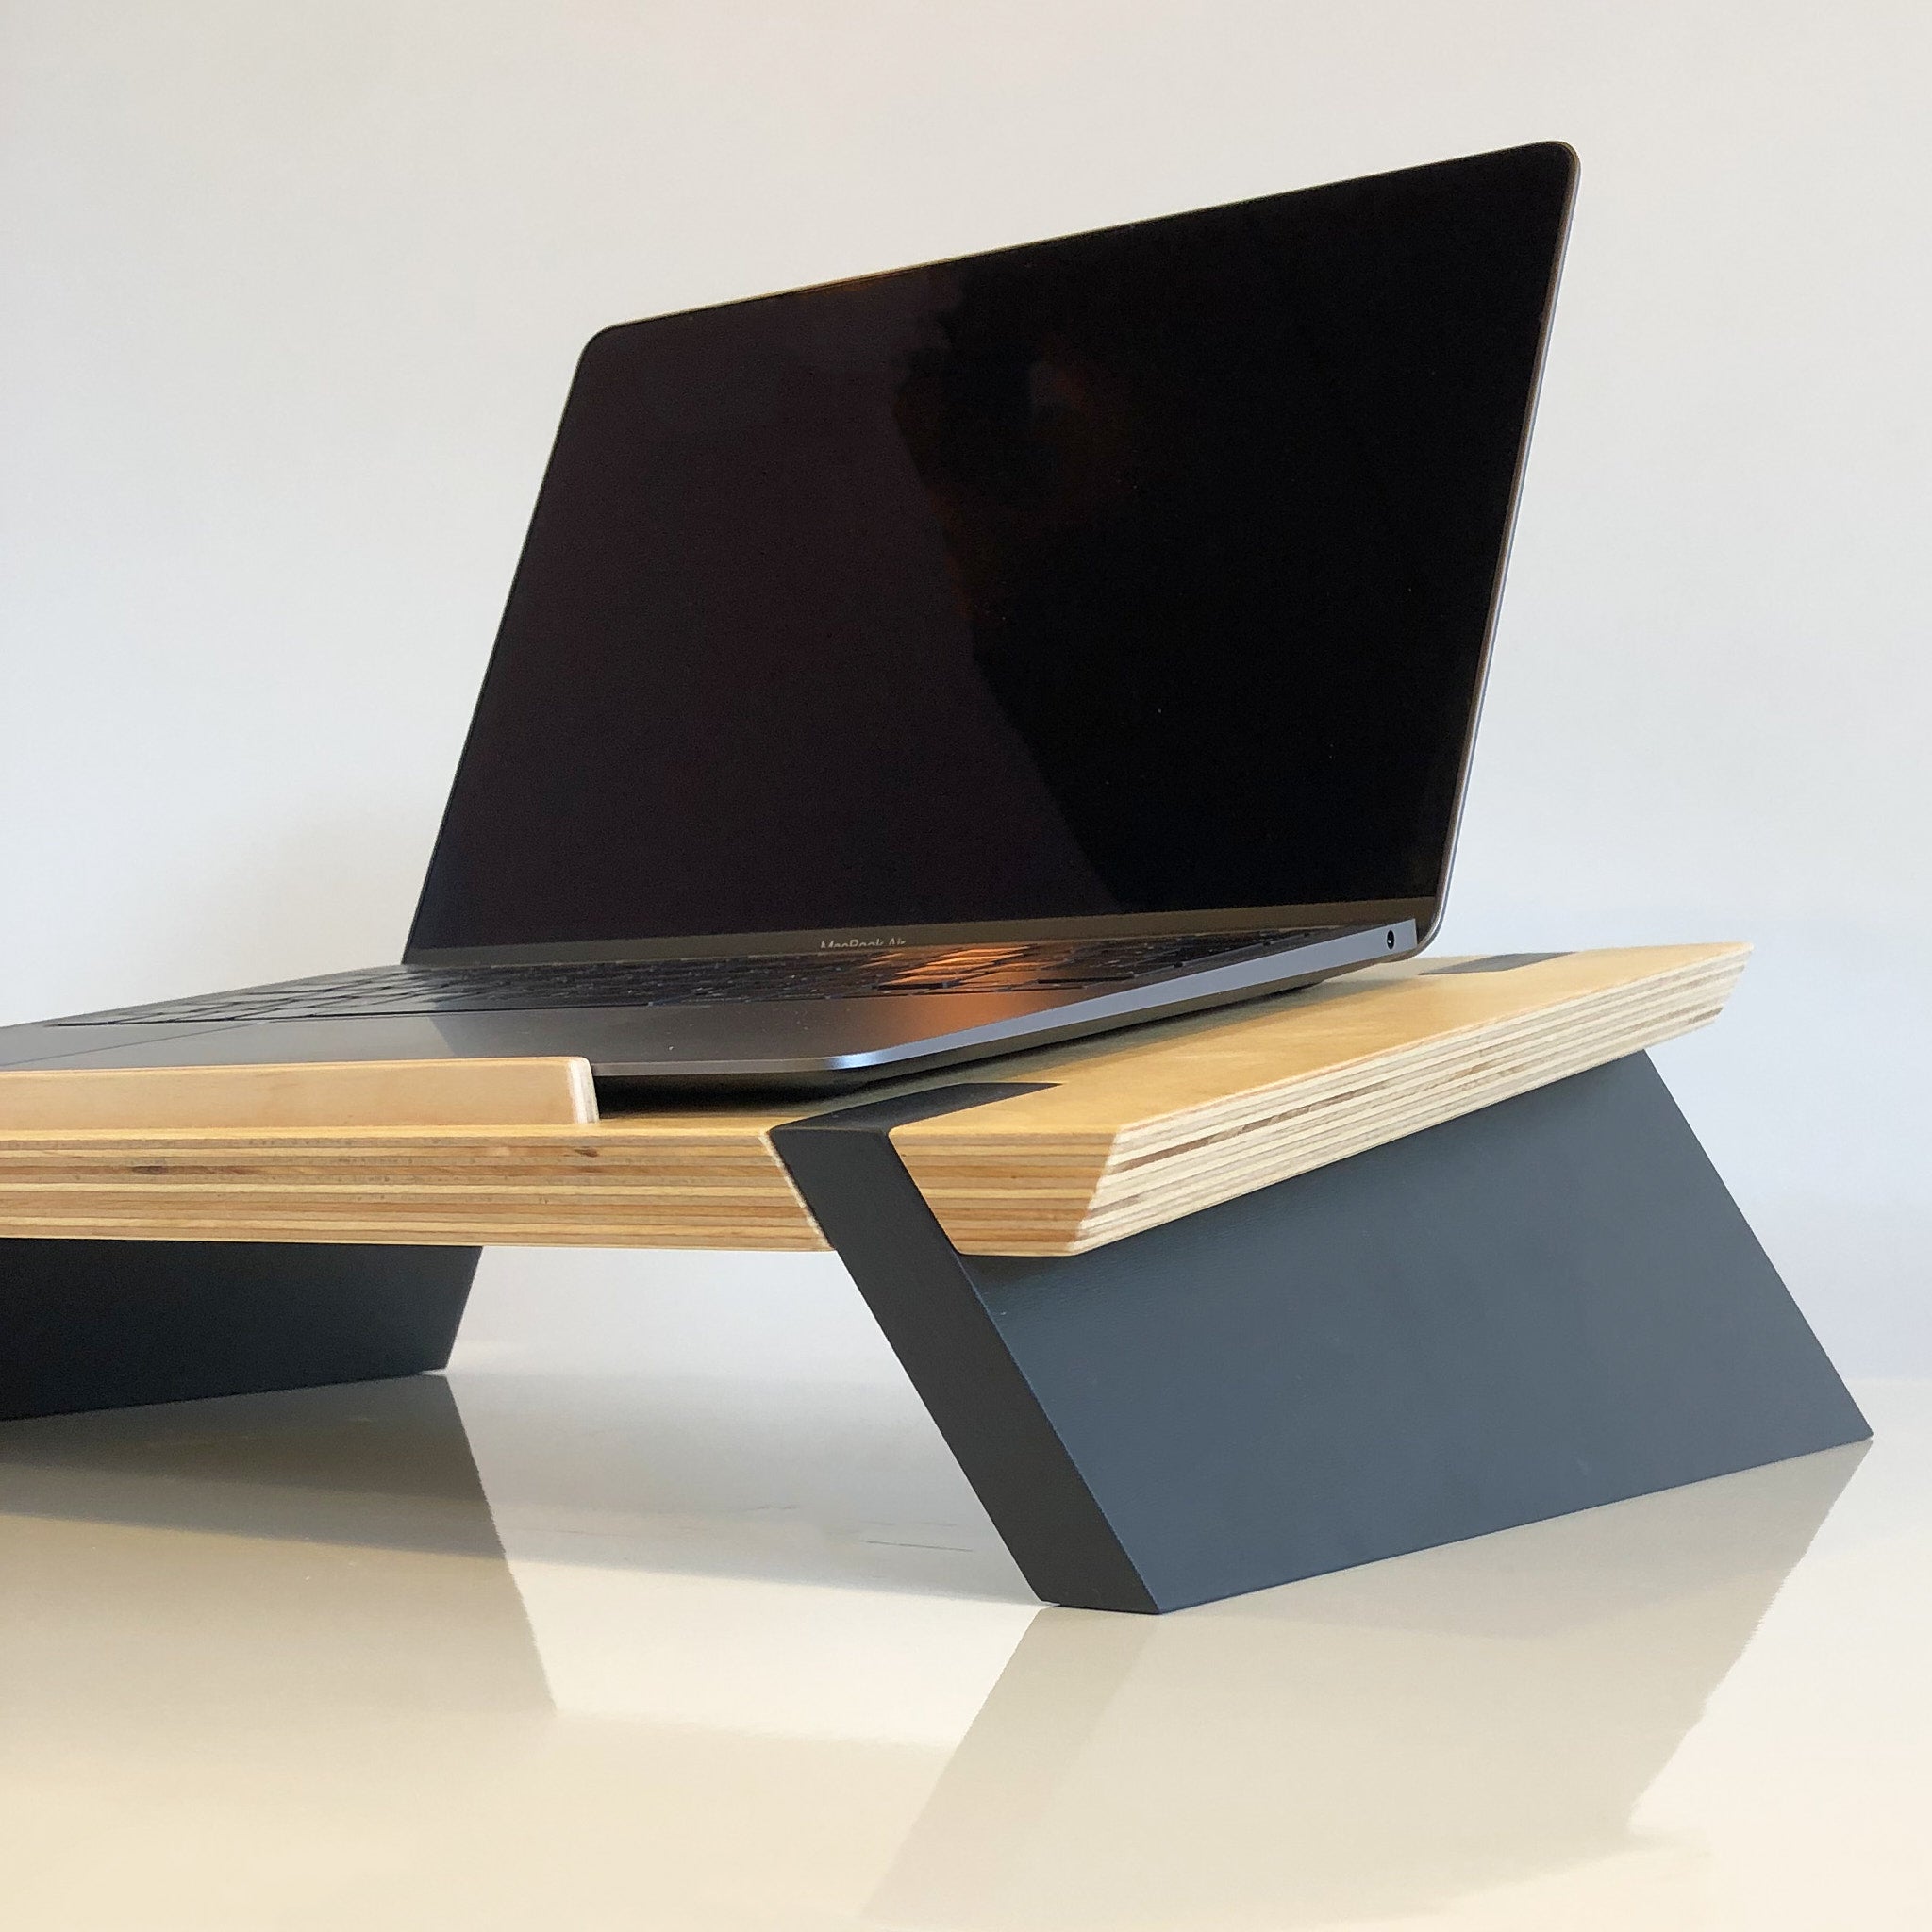 Supporto per pc portatile, laptop standing desk, ergonomico in legno  bicolore casual